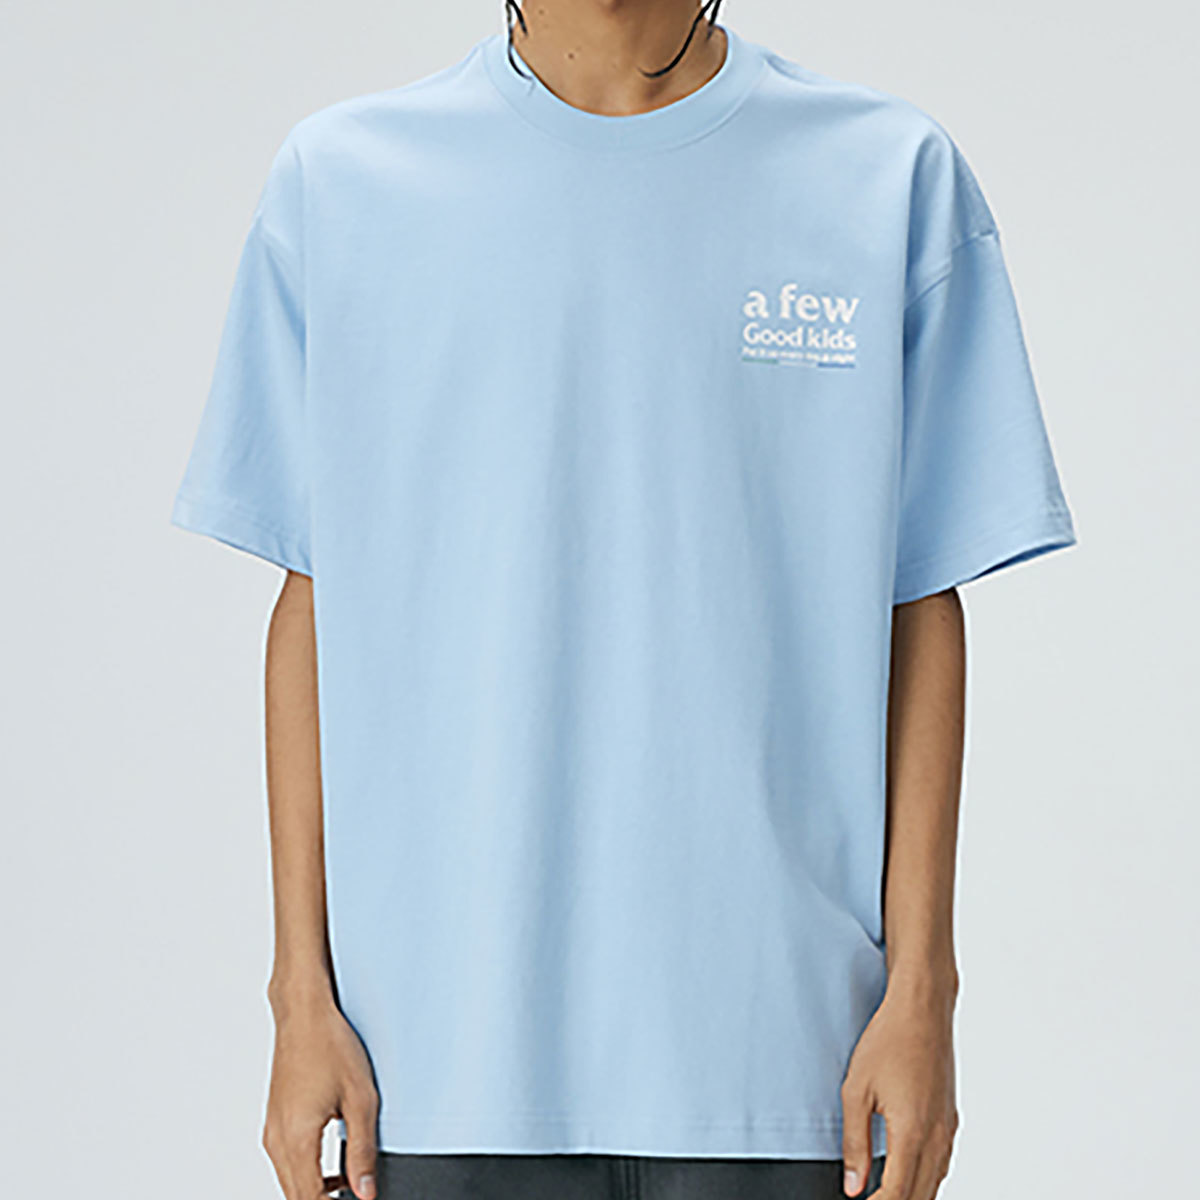 【 A FEW GOOD KIDS 】 AFGK 正規品 男女兼用 ビッグサイズ ストリート系 ロゴ プリント バックプリント Tシャツ LOGO TEE ブルー XL_画像5